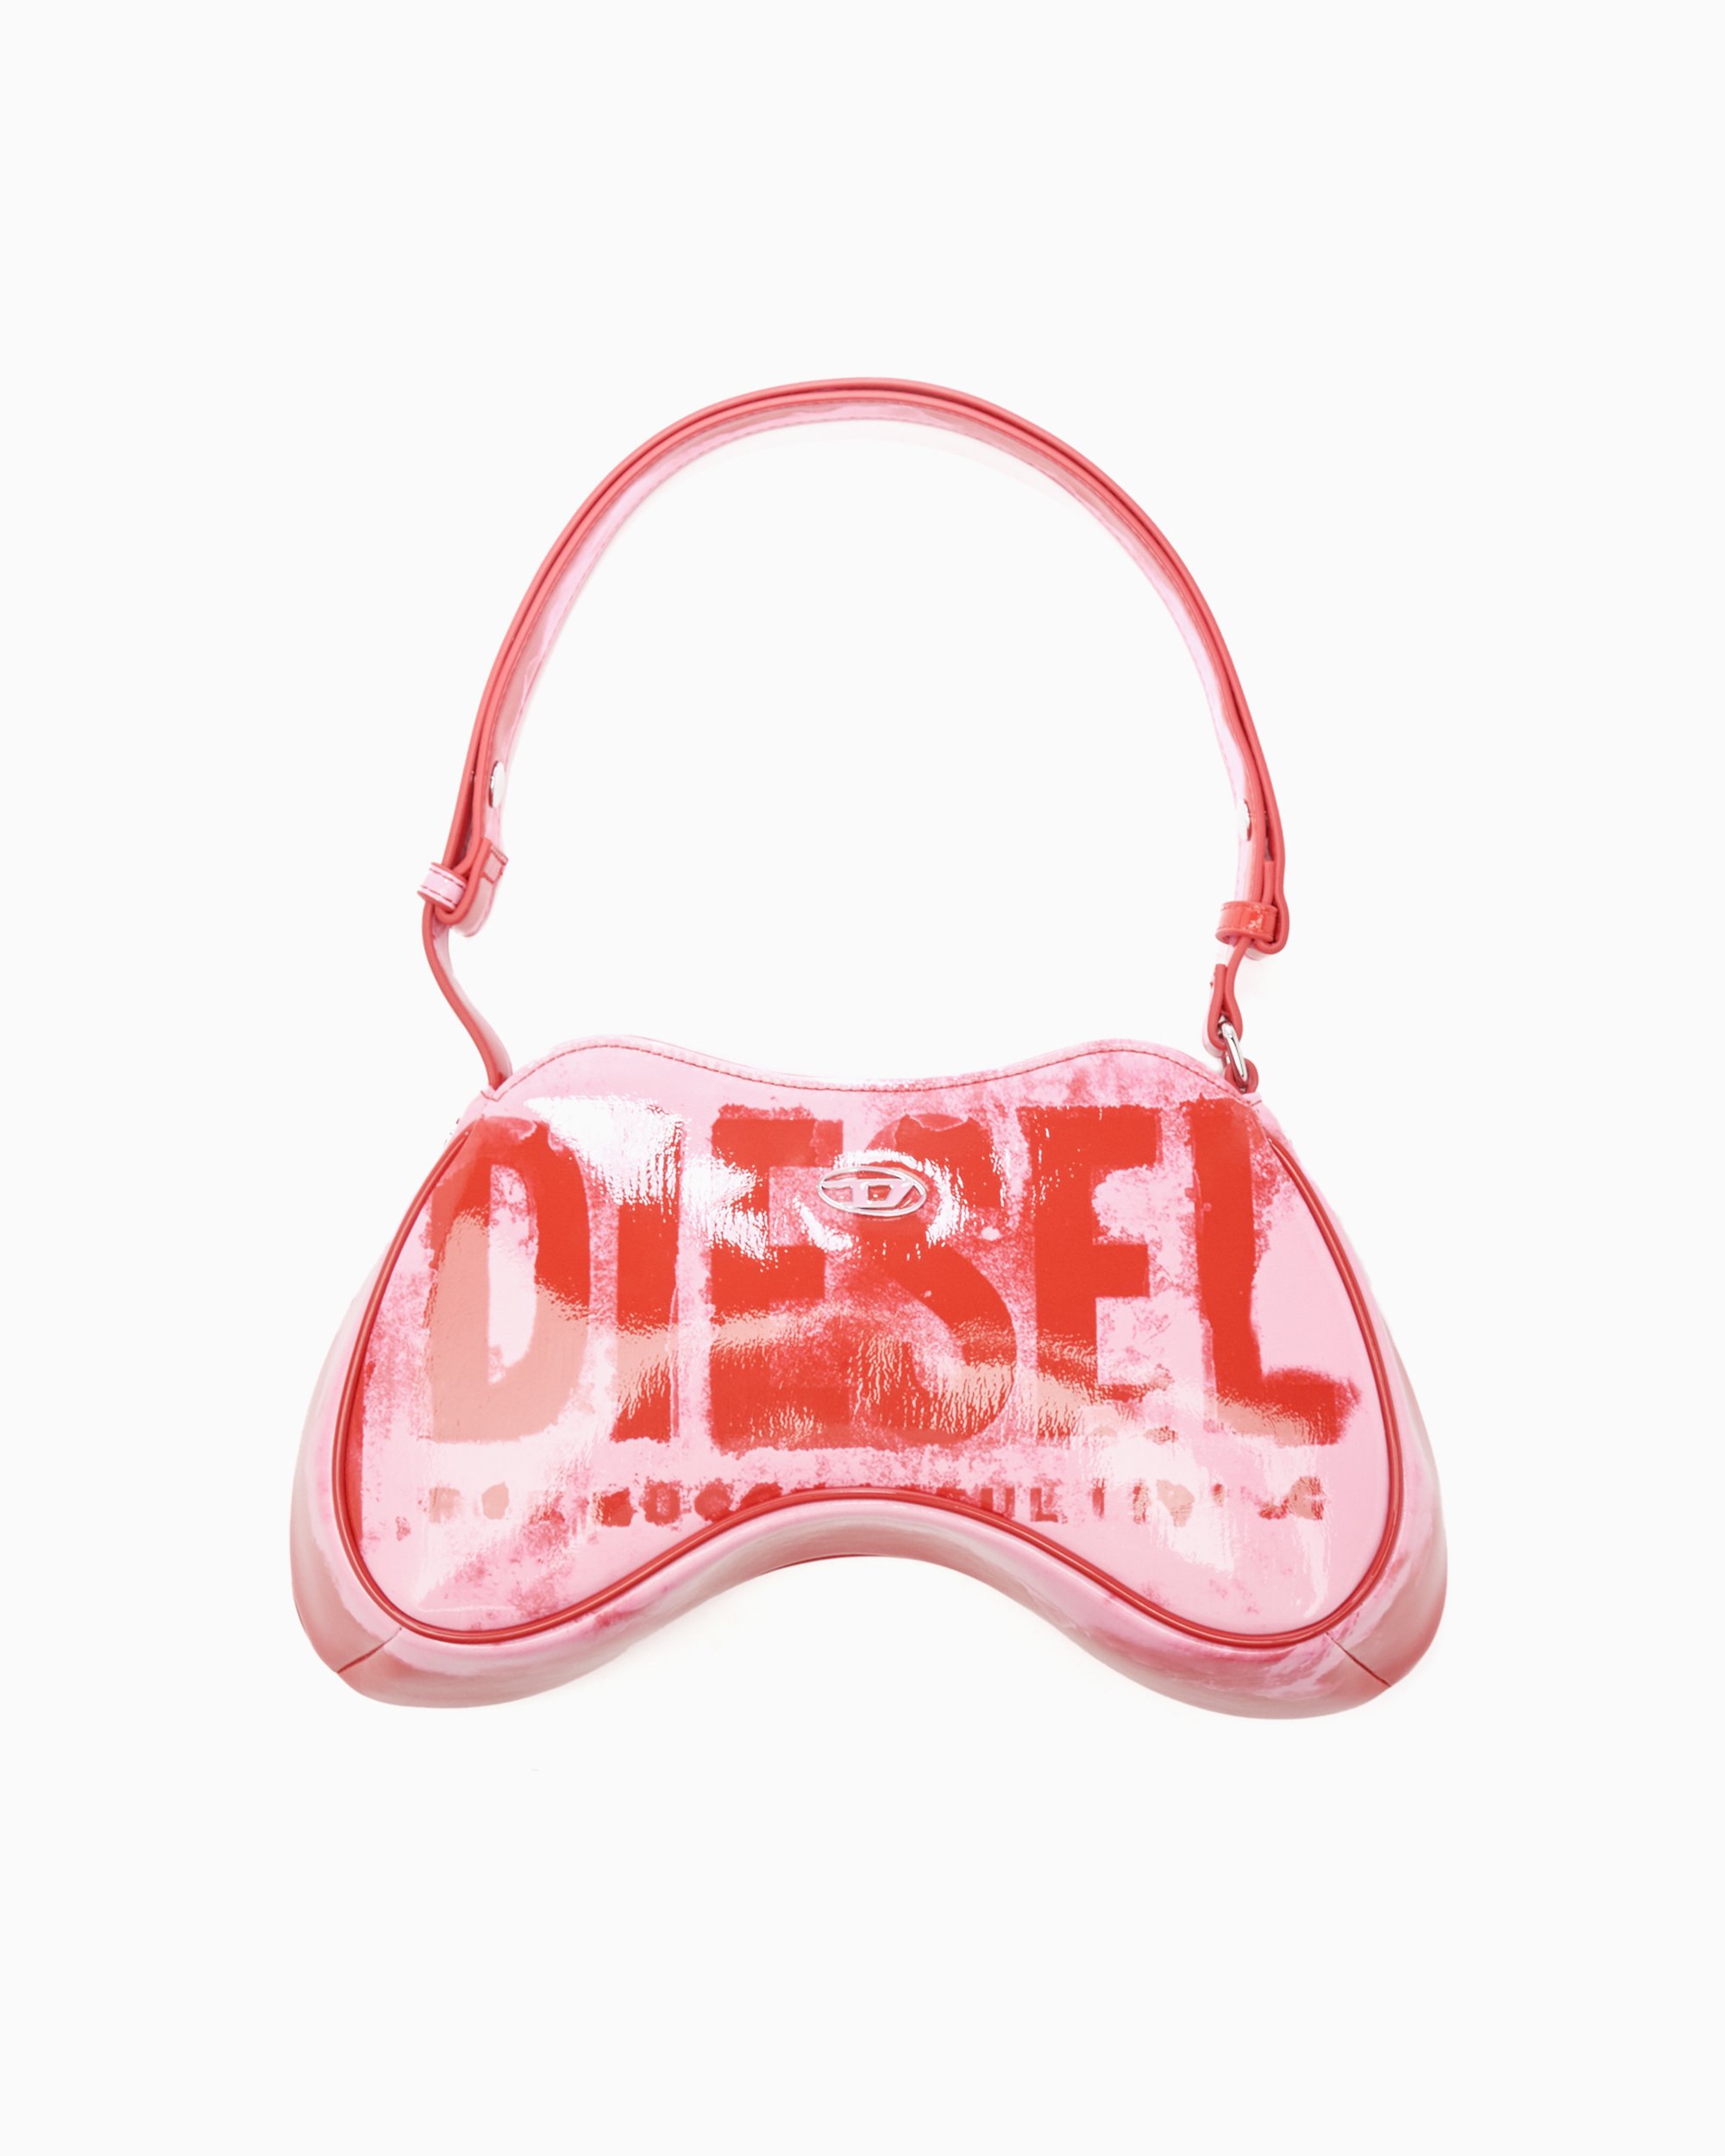 Diesel Play Unisex Shoulder Crossbody Bag Pink, Red X09100-P6019-947